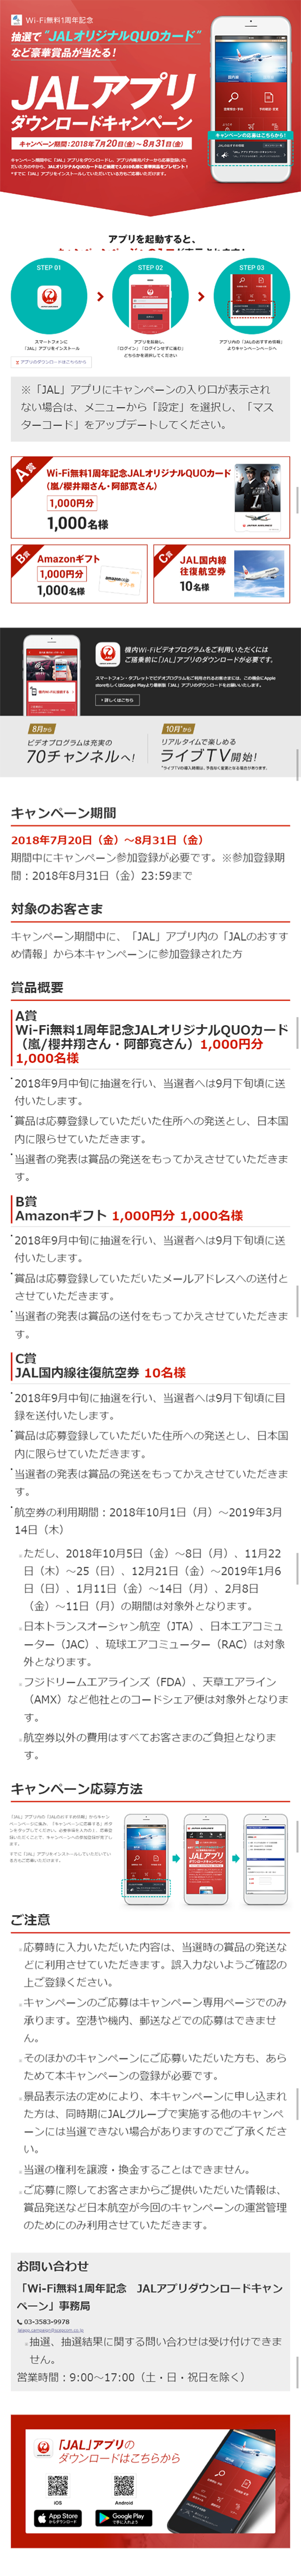 JALアプリダウンロードキャンペーン_sp_1